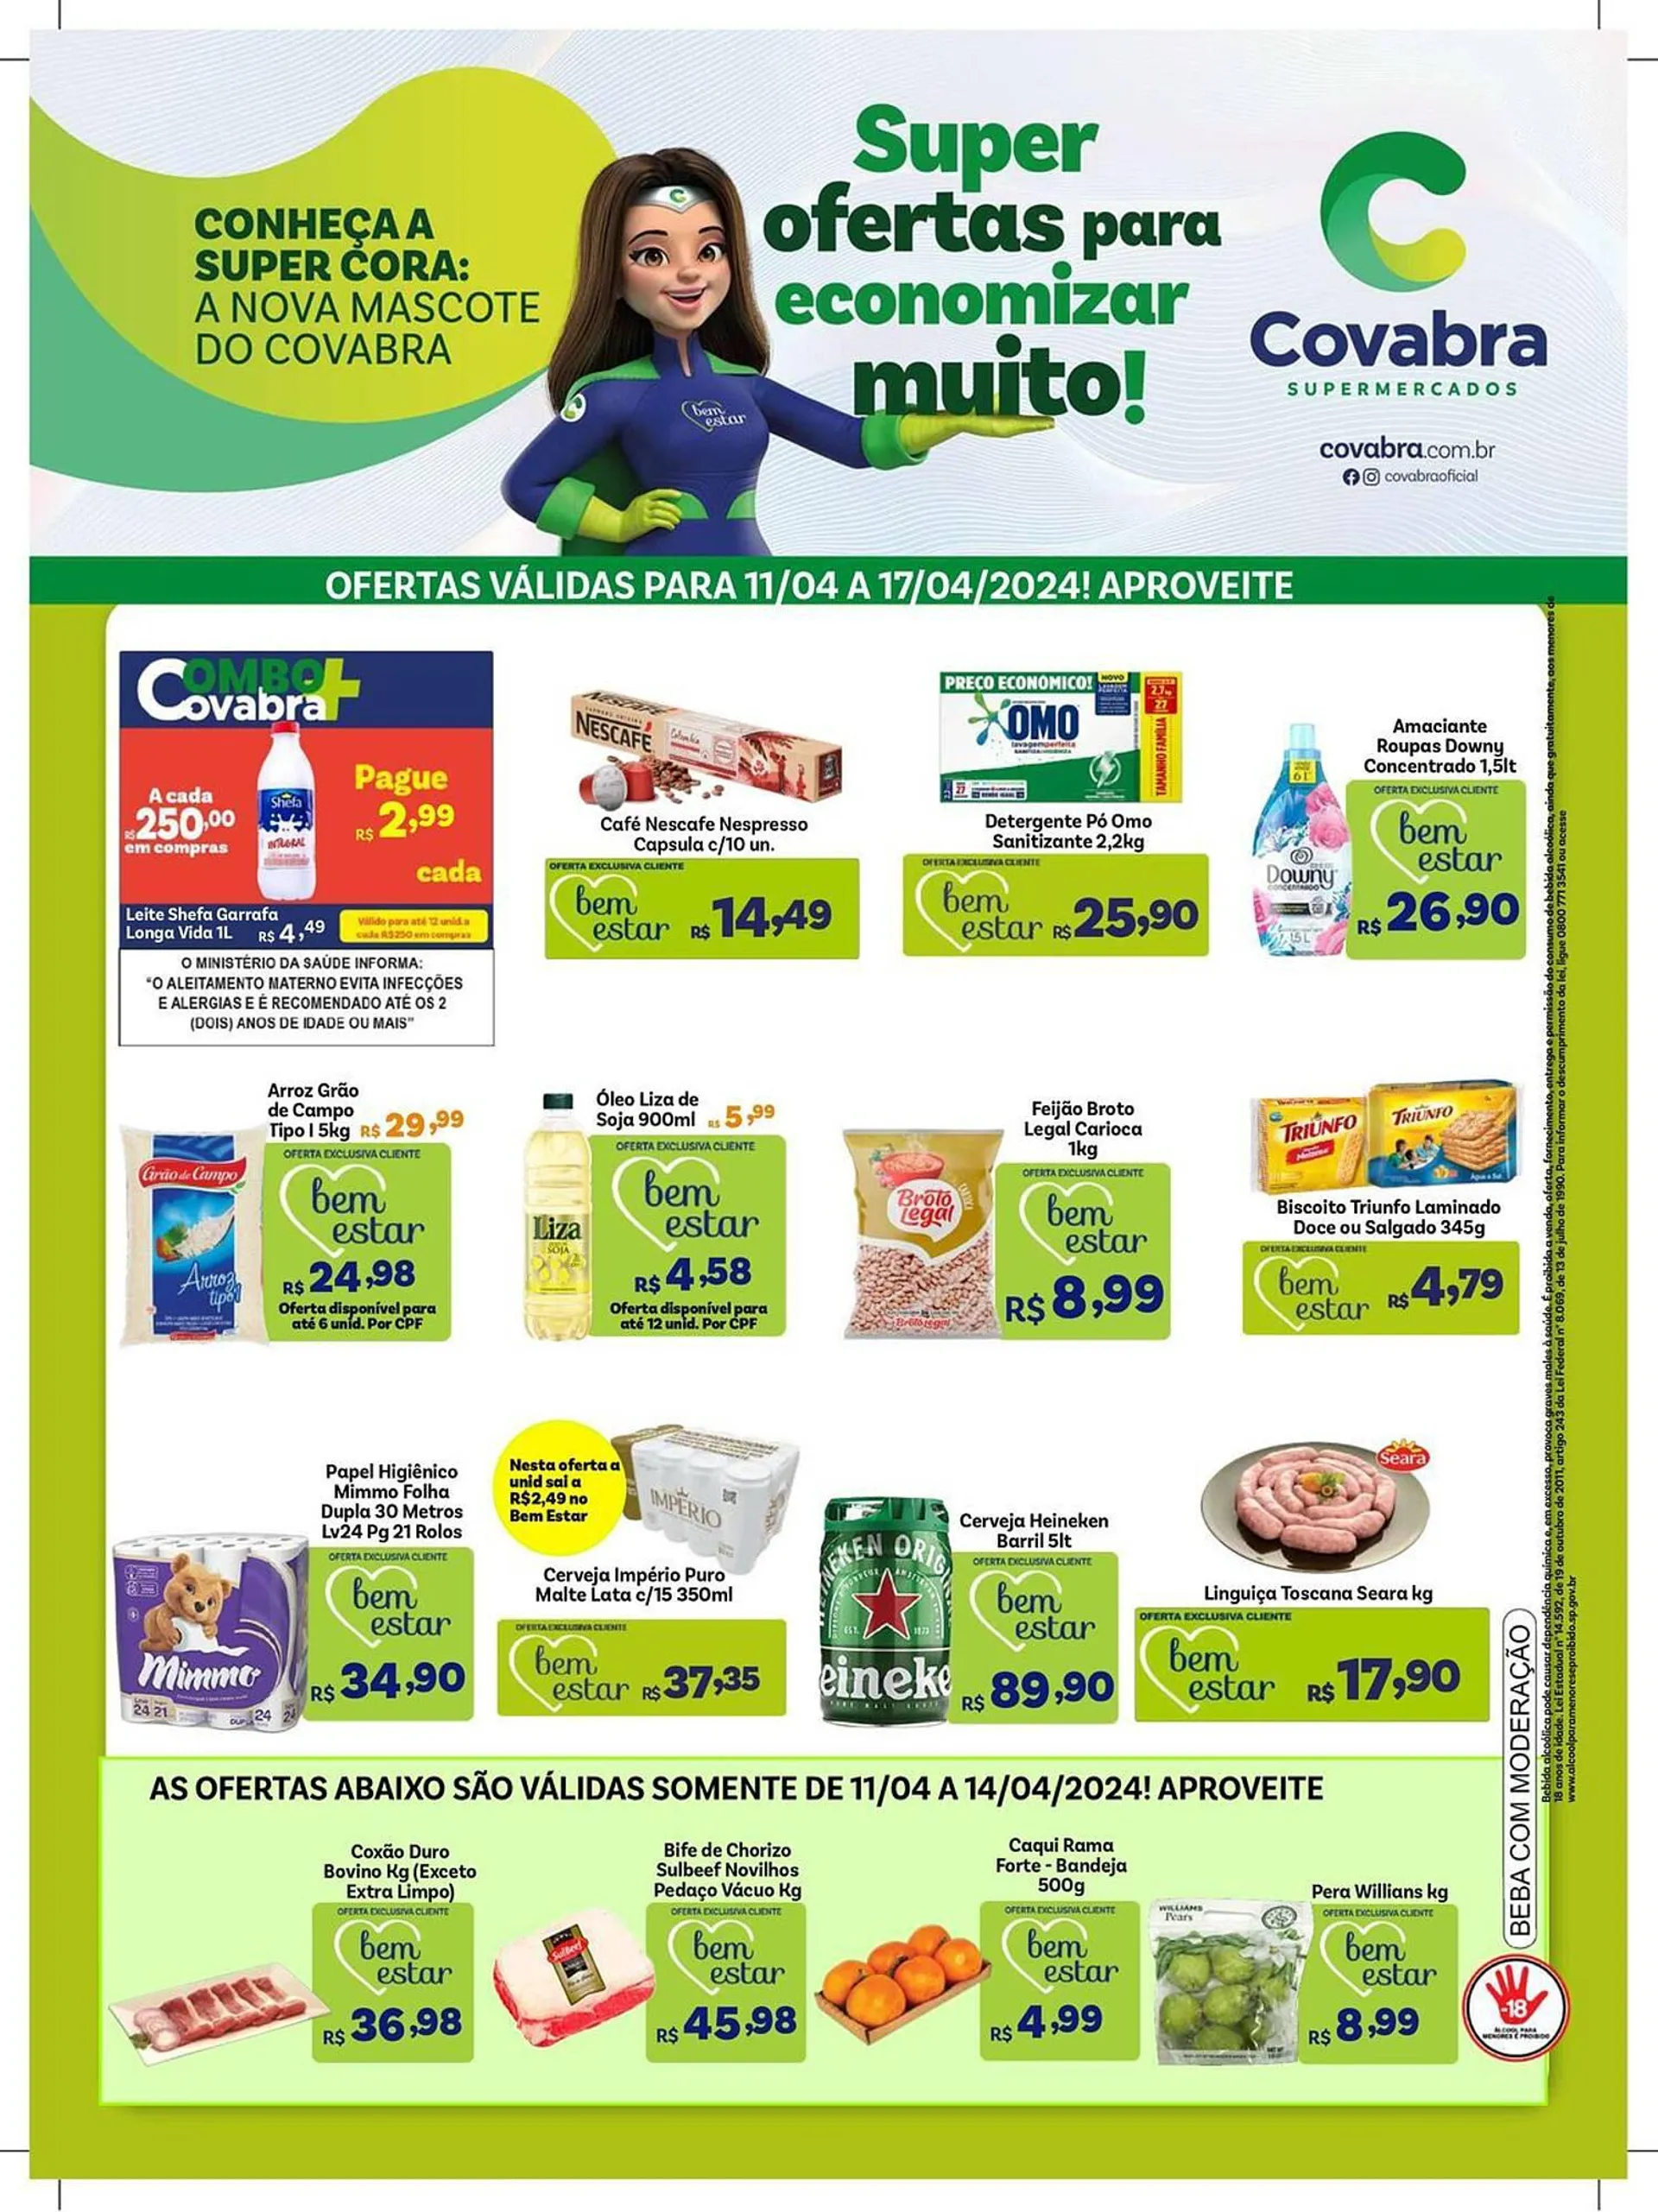 Encarte de Catálogo Covabra Supermercados 12 de abril até 17 de abril 2024 - Pagina 